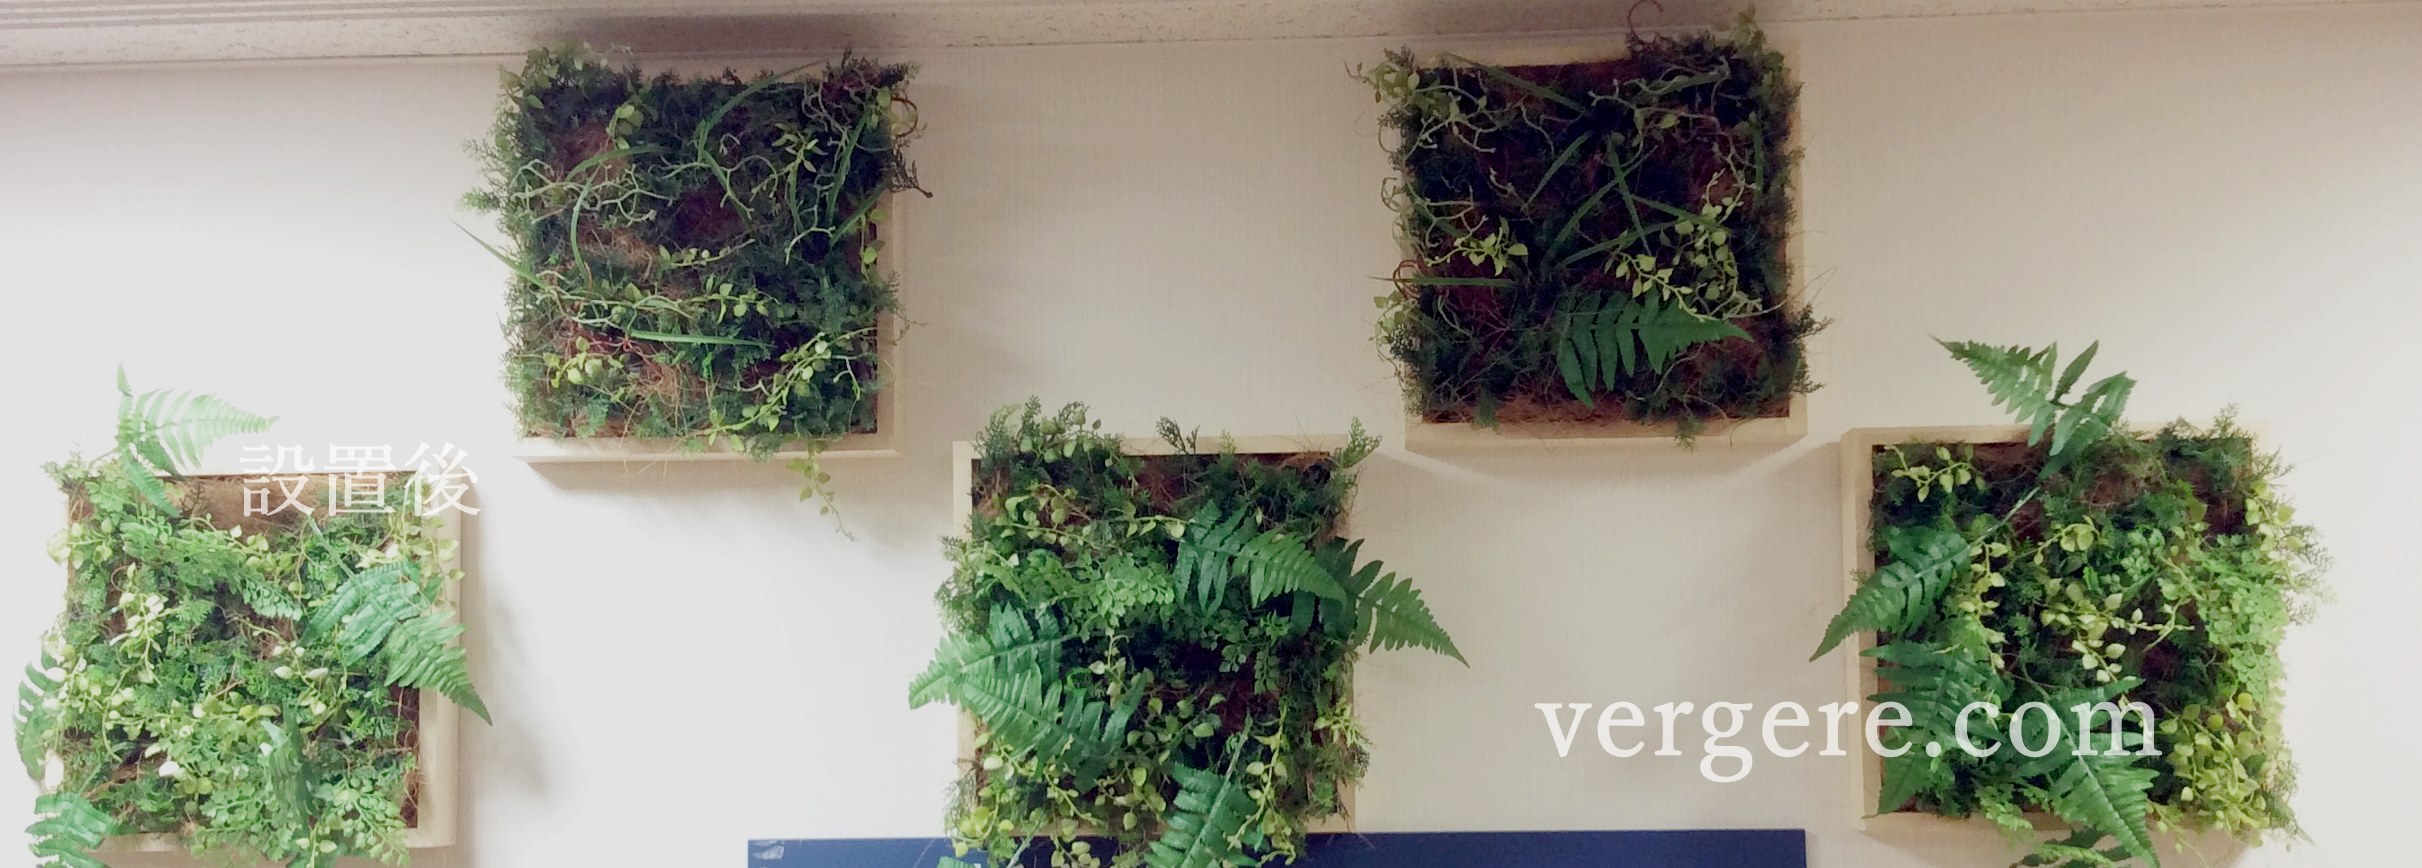 壁面緑化・壁掛け・ウォールグリーン・人工樹木パネル | 観葉植物レンタルとグリーンレンタルのヴェルジェ